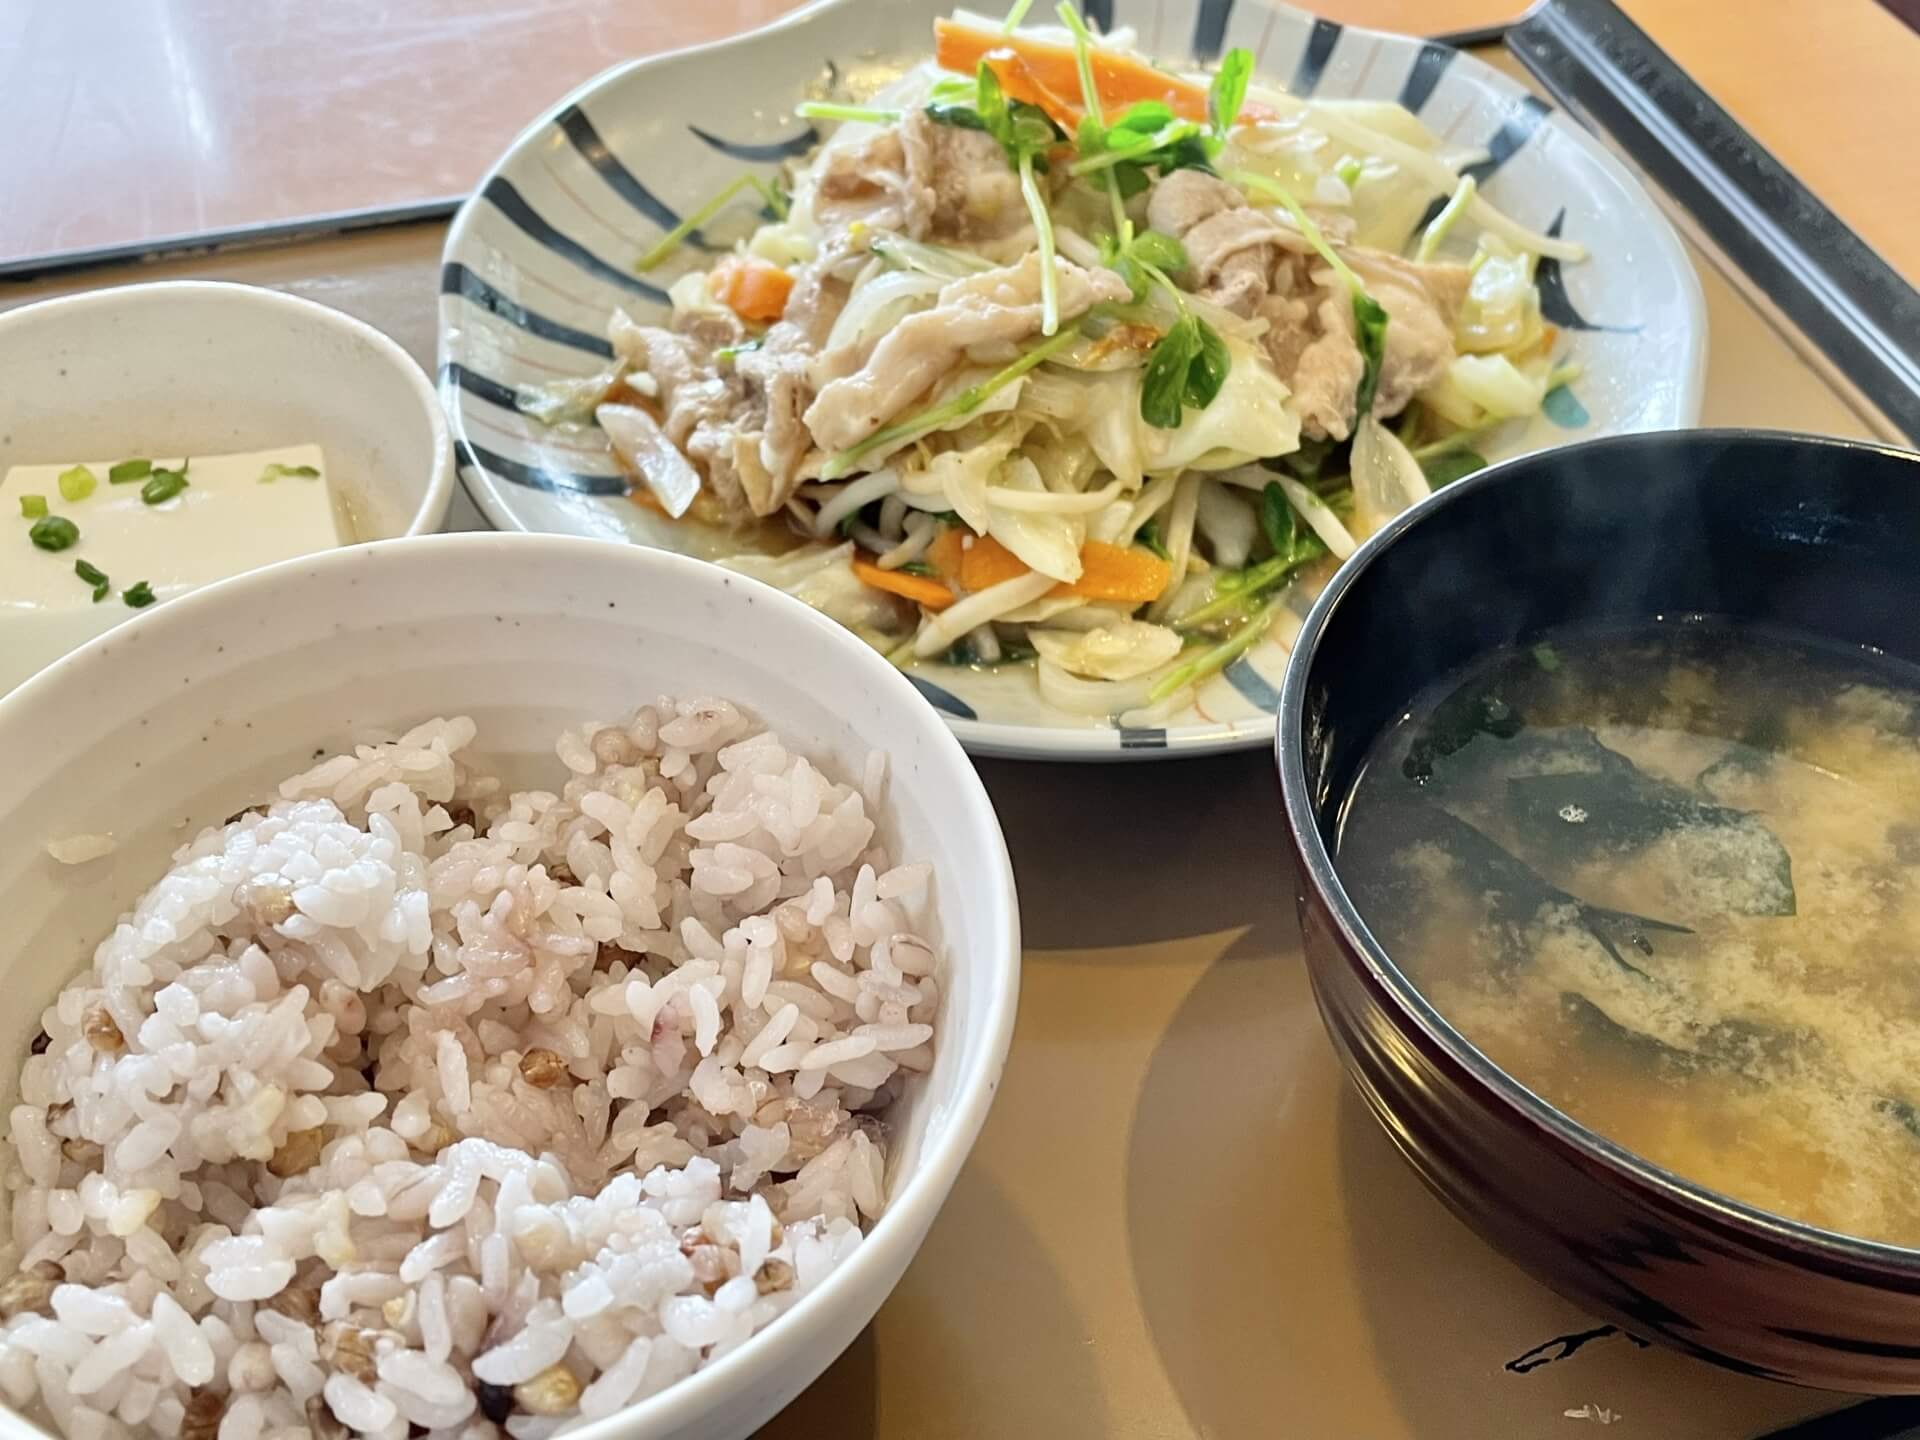 白米と味噌汁、豆腐、野菜炒めがトレイに載っている写真